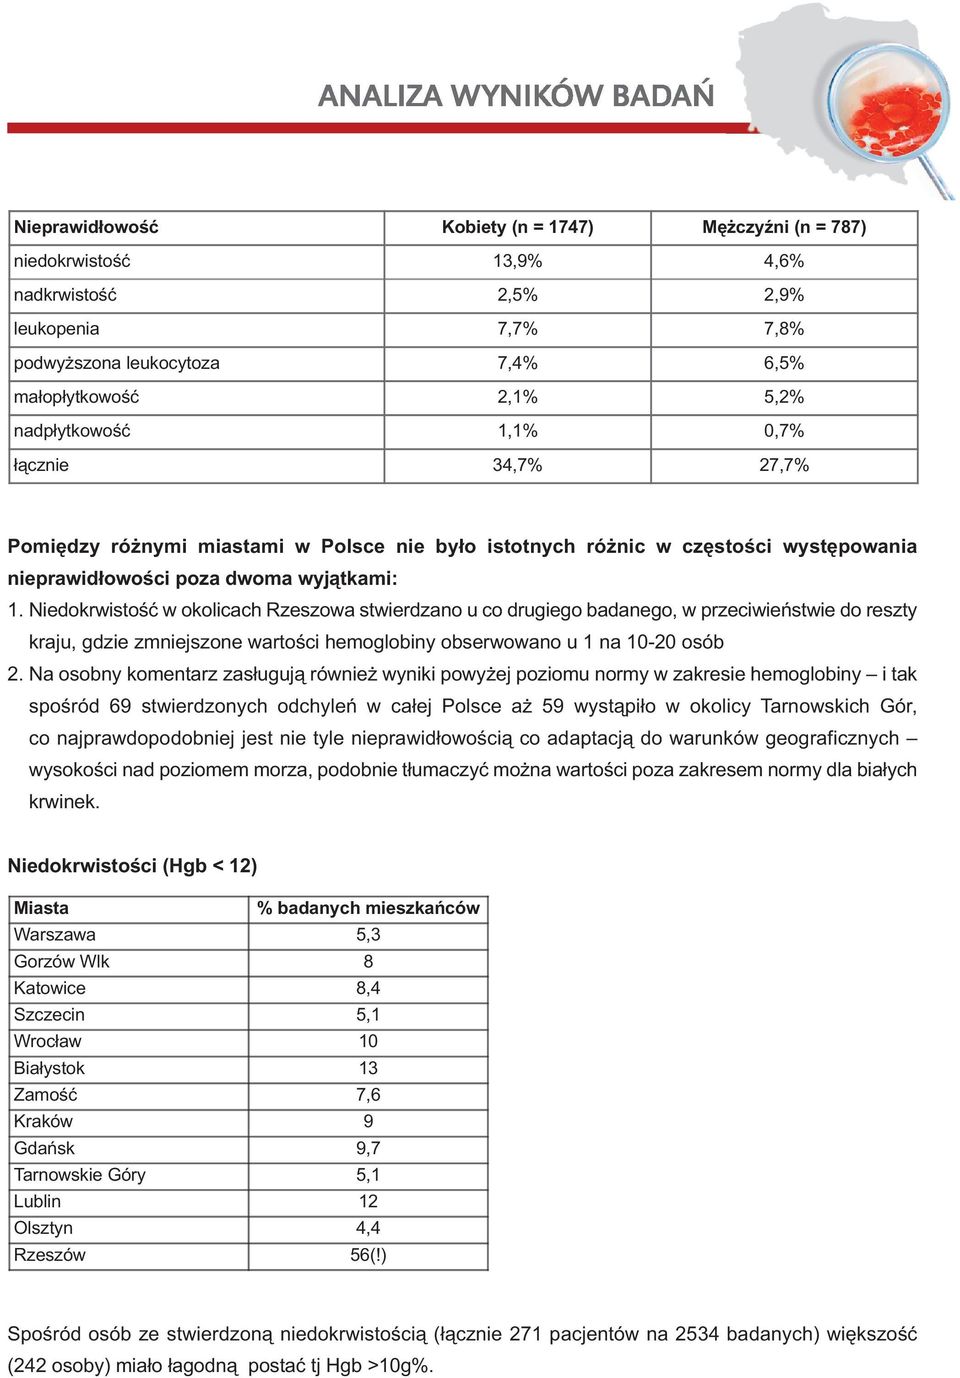 Niedokrwistość w okolicach Rzeszowa stwierdzano u co drugiego badanego, w przeciwieństwie do reszty kraju, gdzie zmniejszone wartości hemoglobiny obserwowano u 1 na 10-20 osób 2.